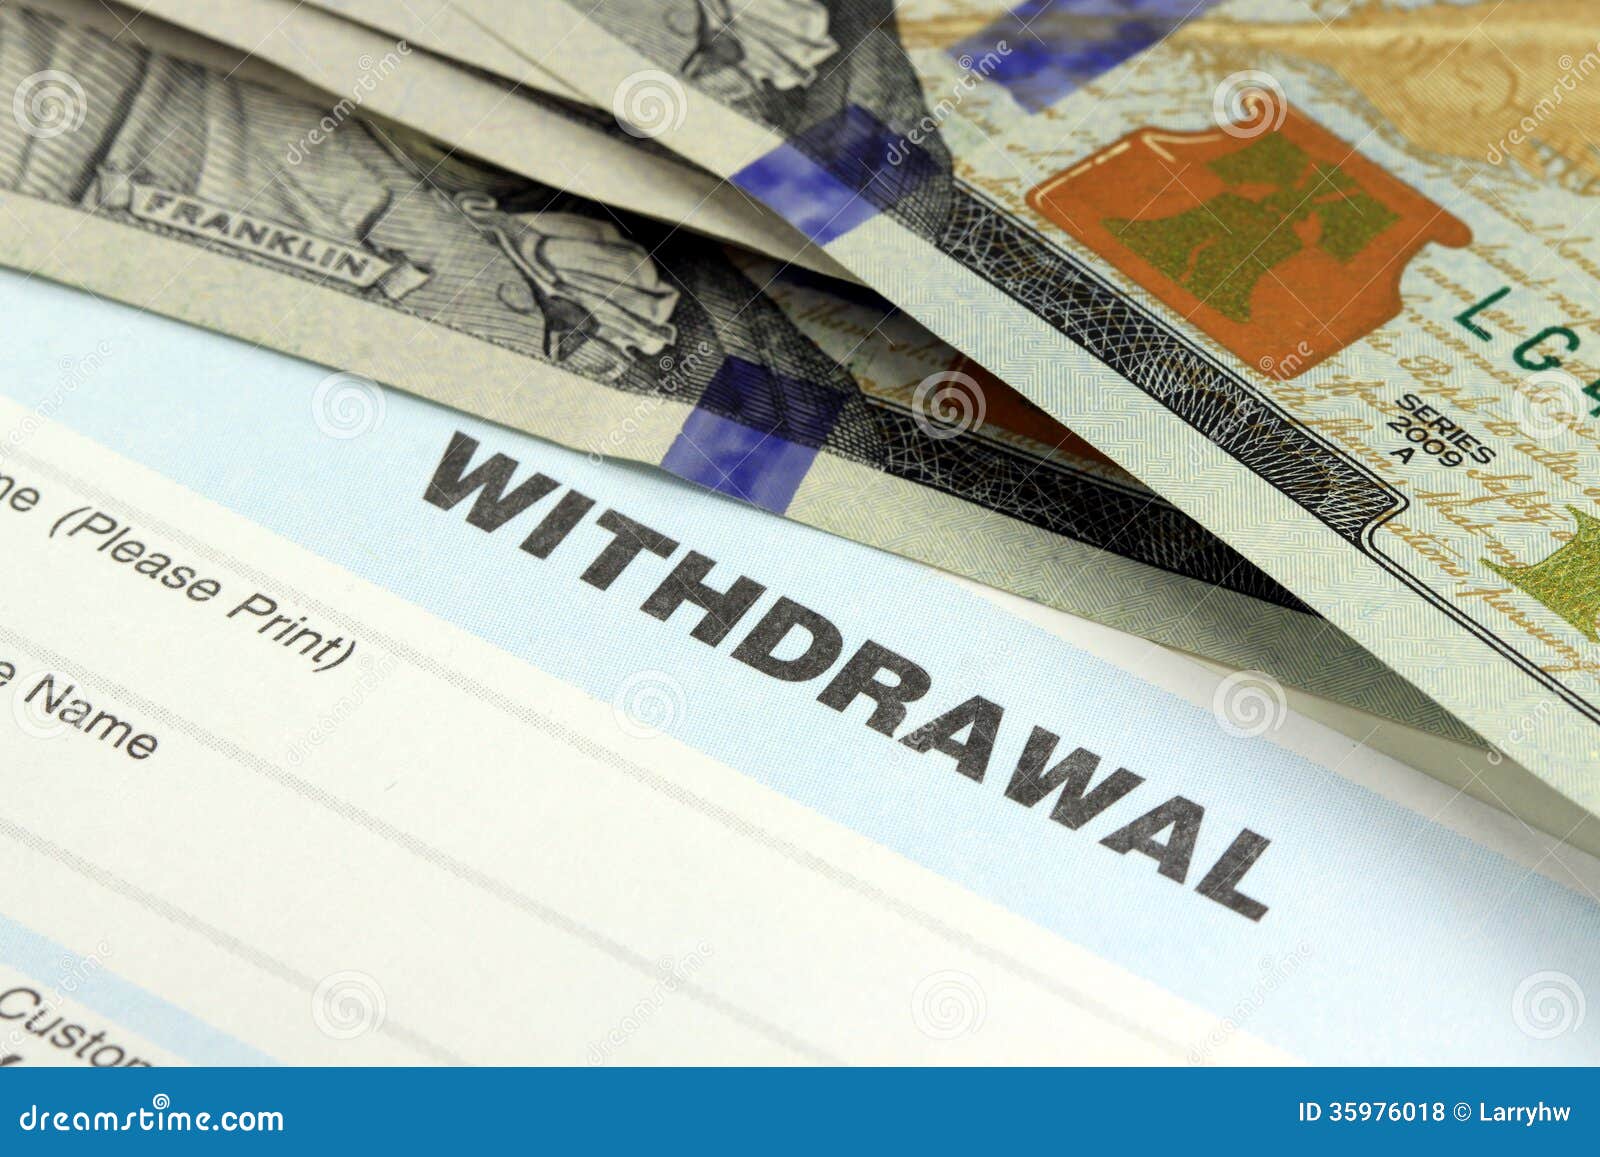 Withdrawal Bank